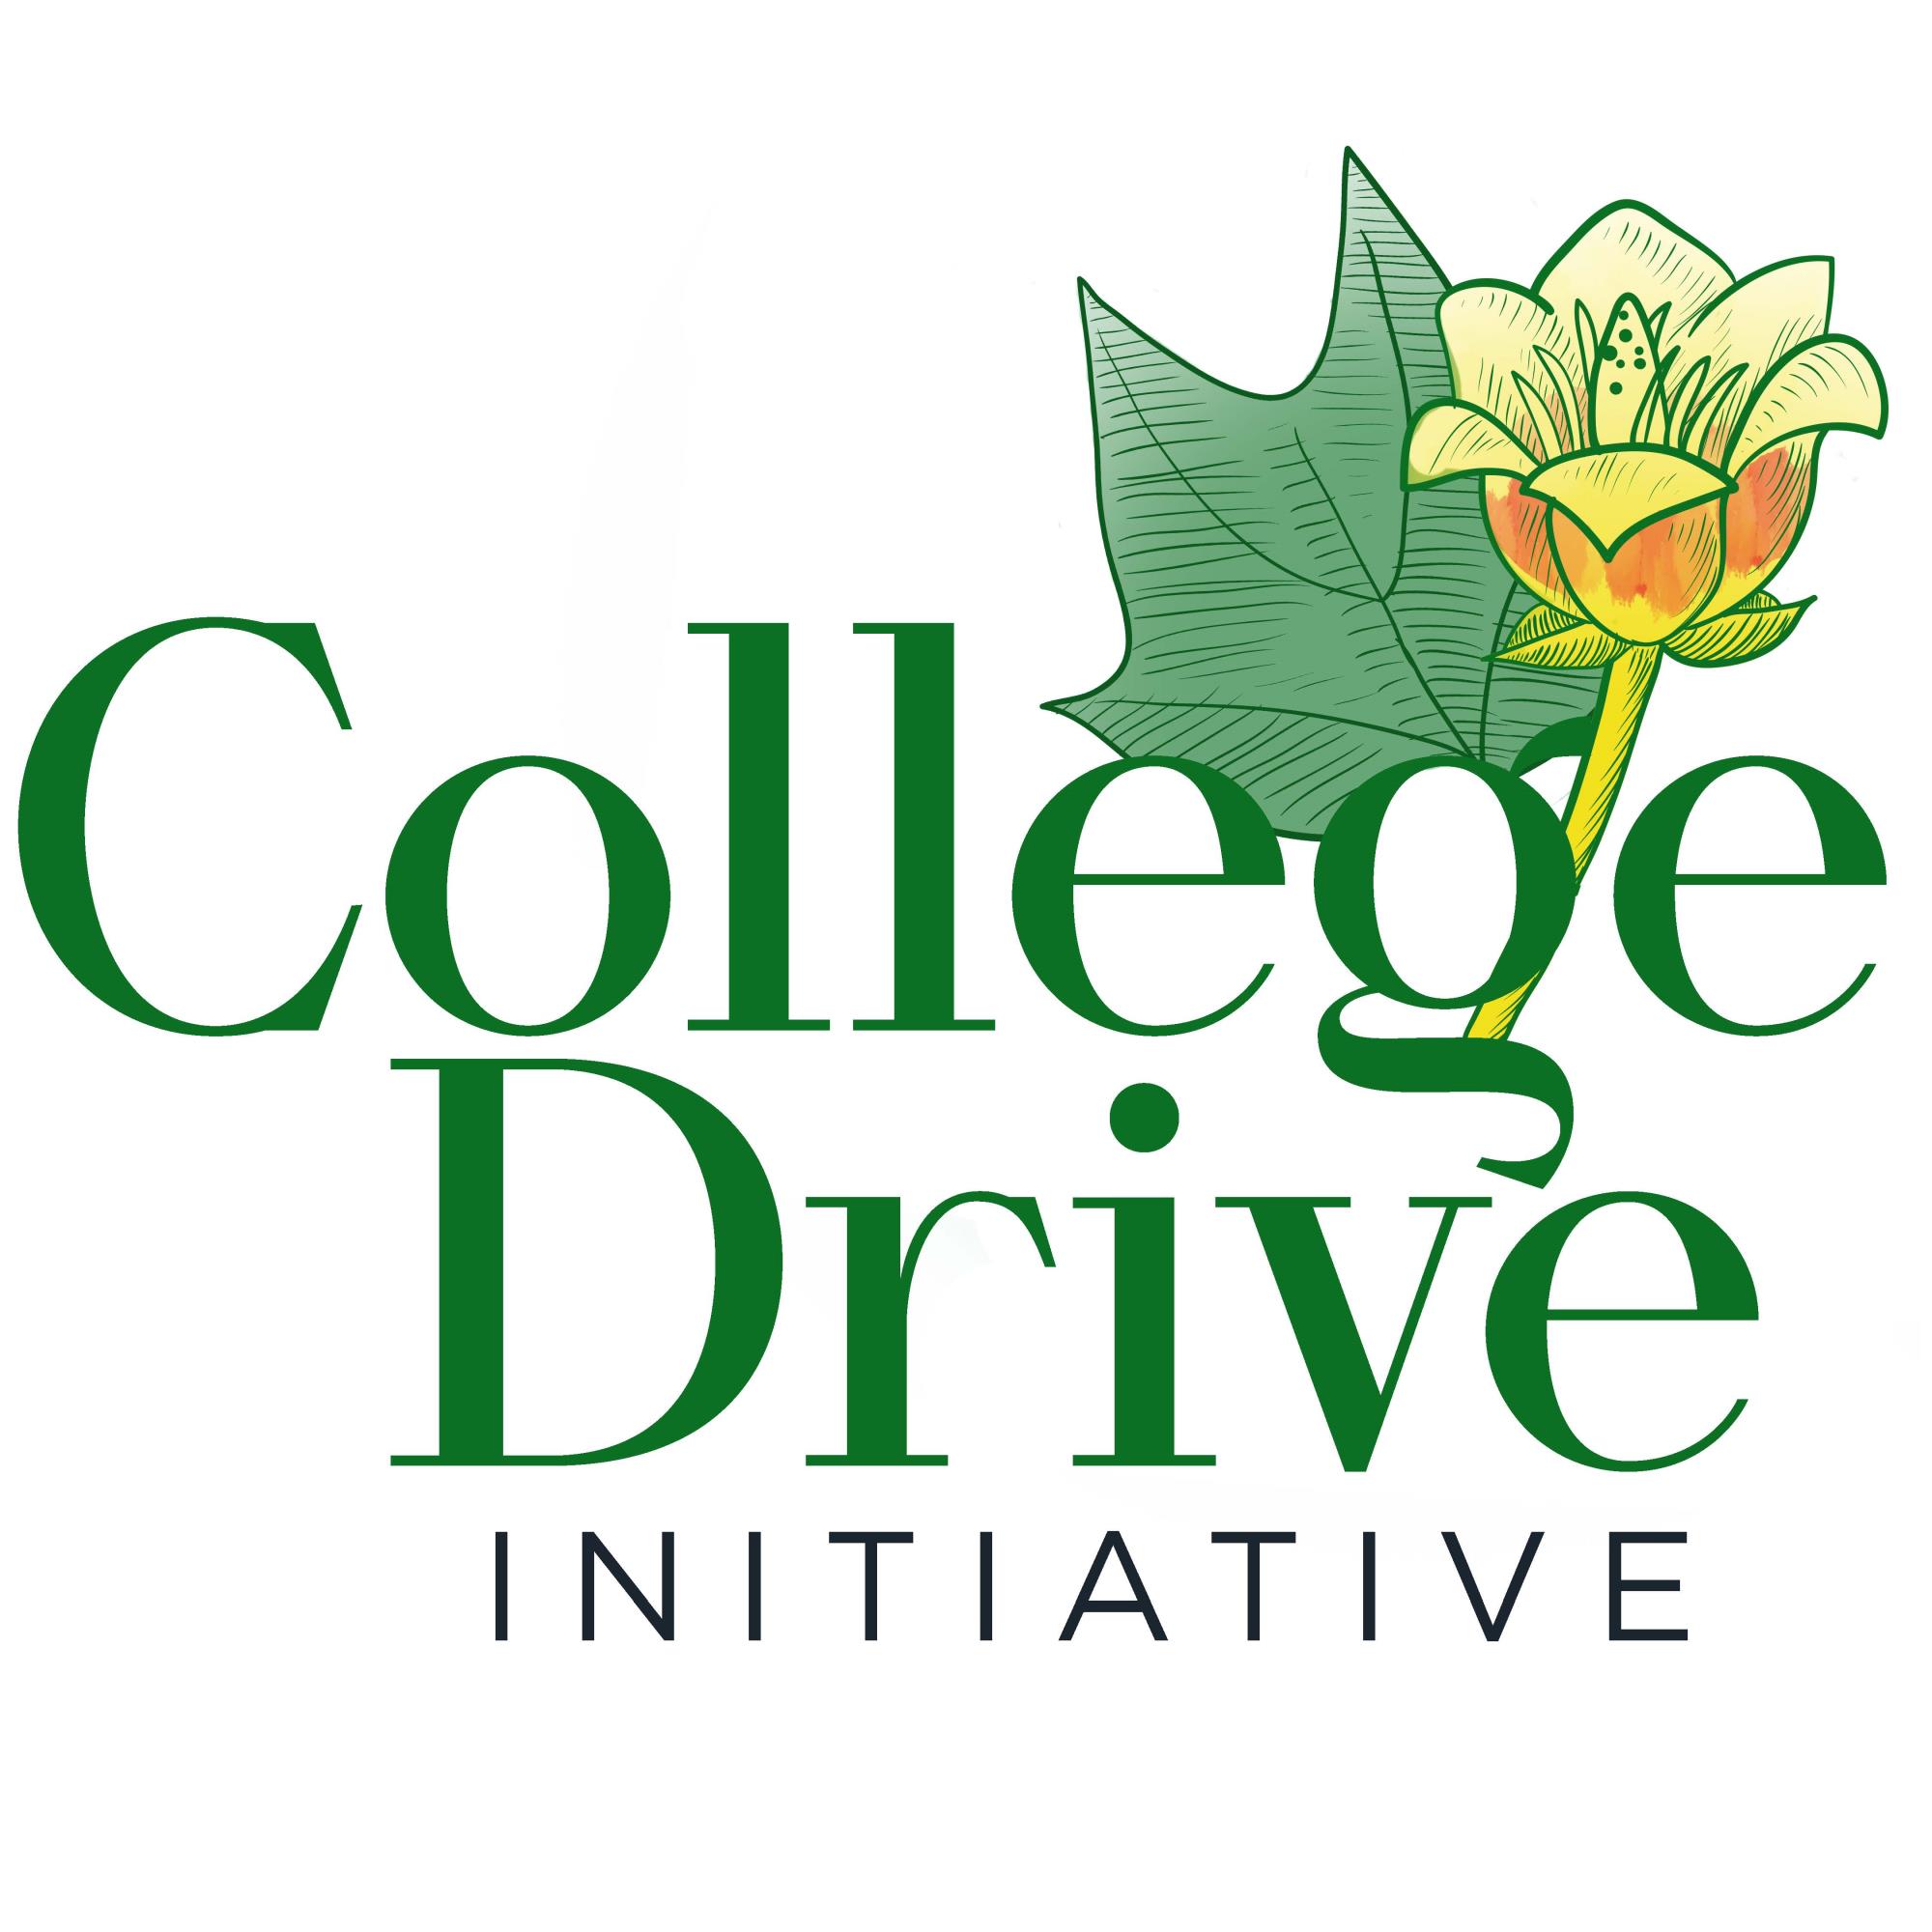 College Drive initiative